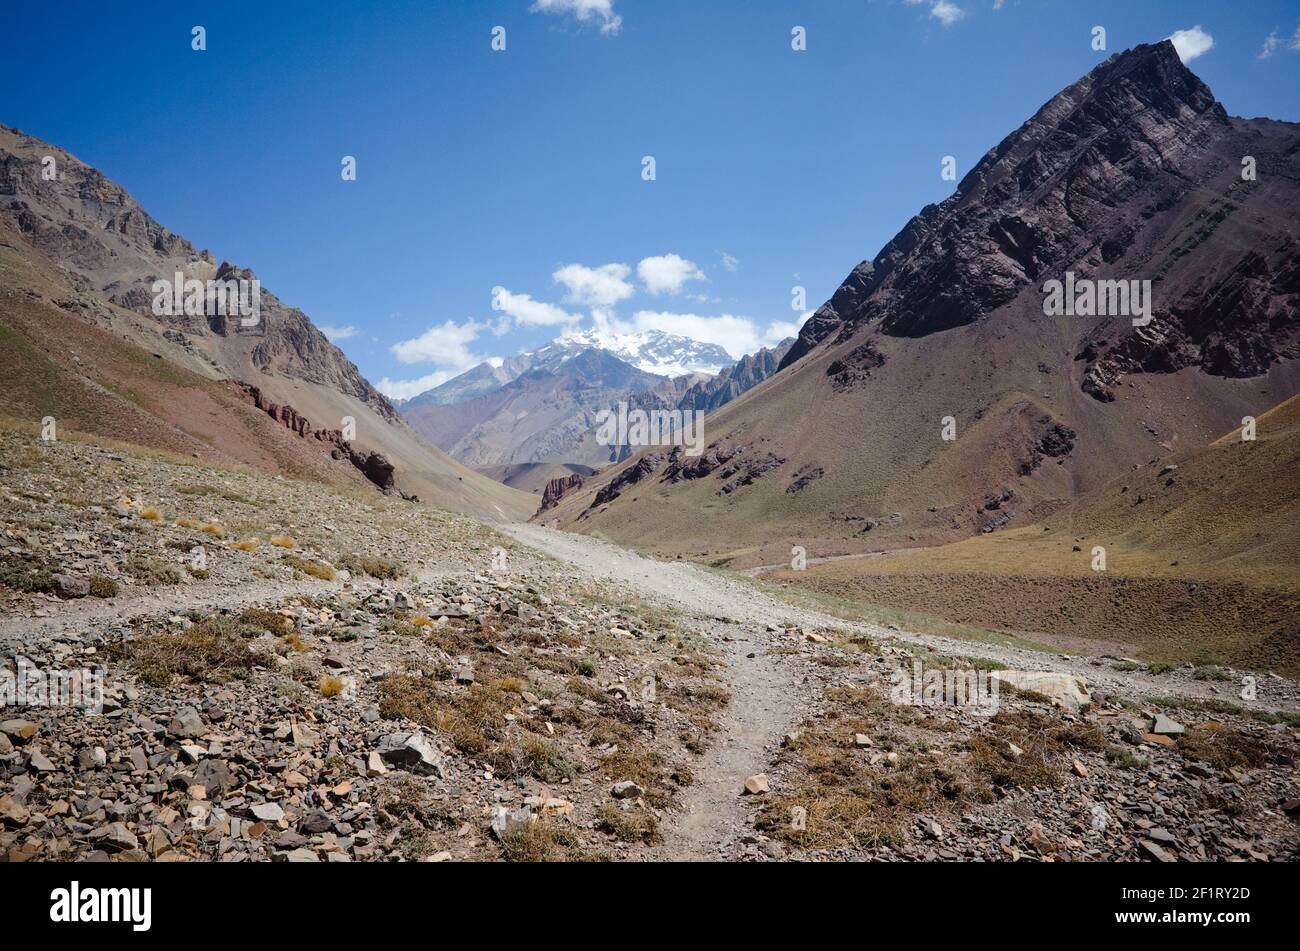 Paesaggio delle Andes Mountains con sentieri escursionistici senza persone. Deserto clima arido e montagne rocciose. Vista sul picco di Aconcagua. Parco provinciale dell'Aconcagua Foto Stock